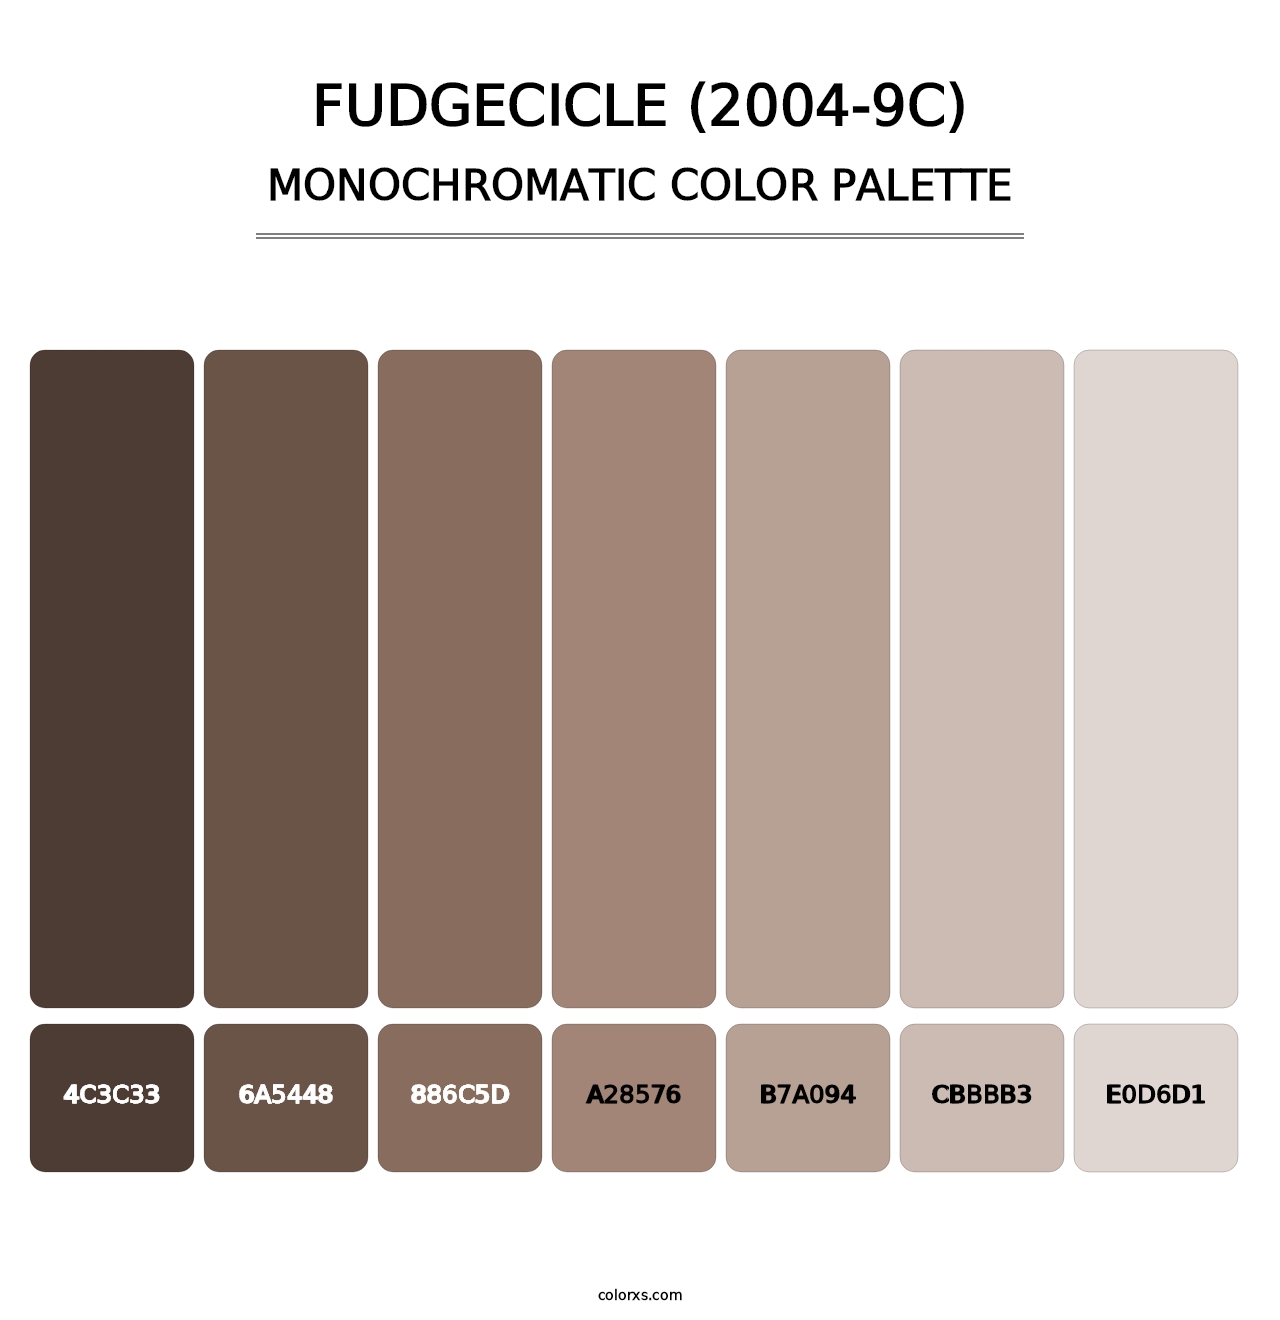 Fudgecicle (2004-9C) - Monochromatic Color Palette